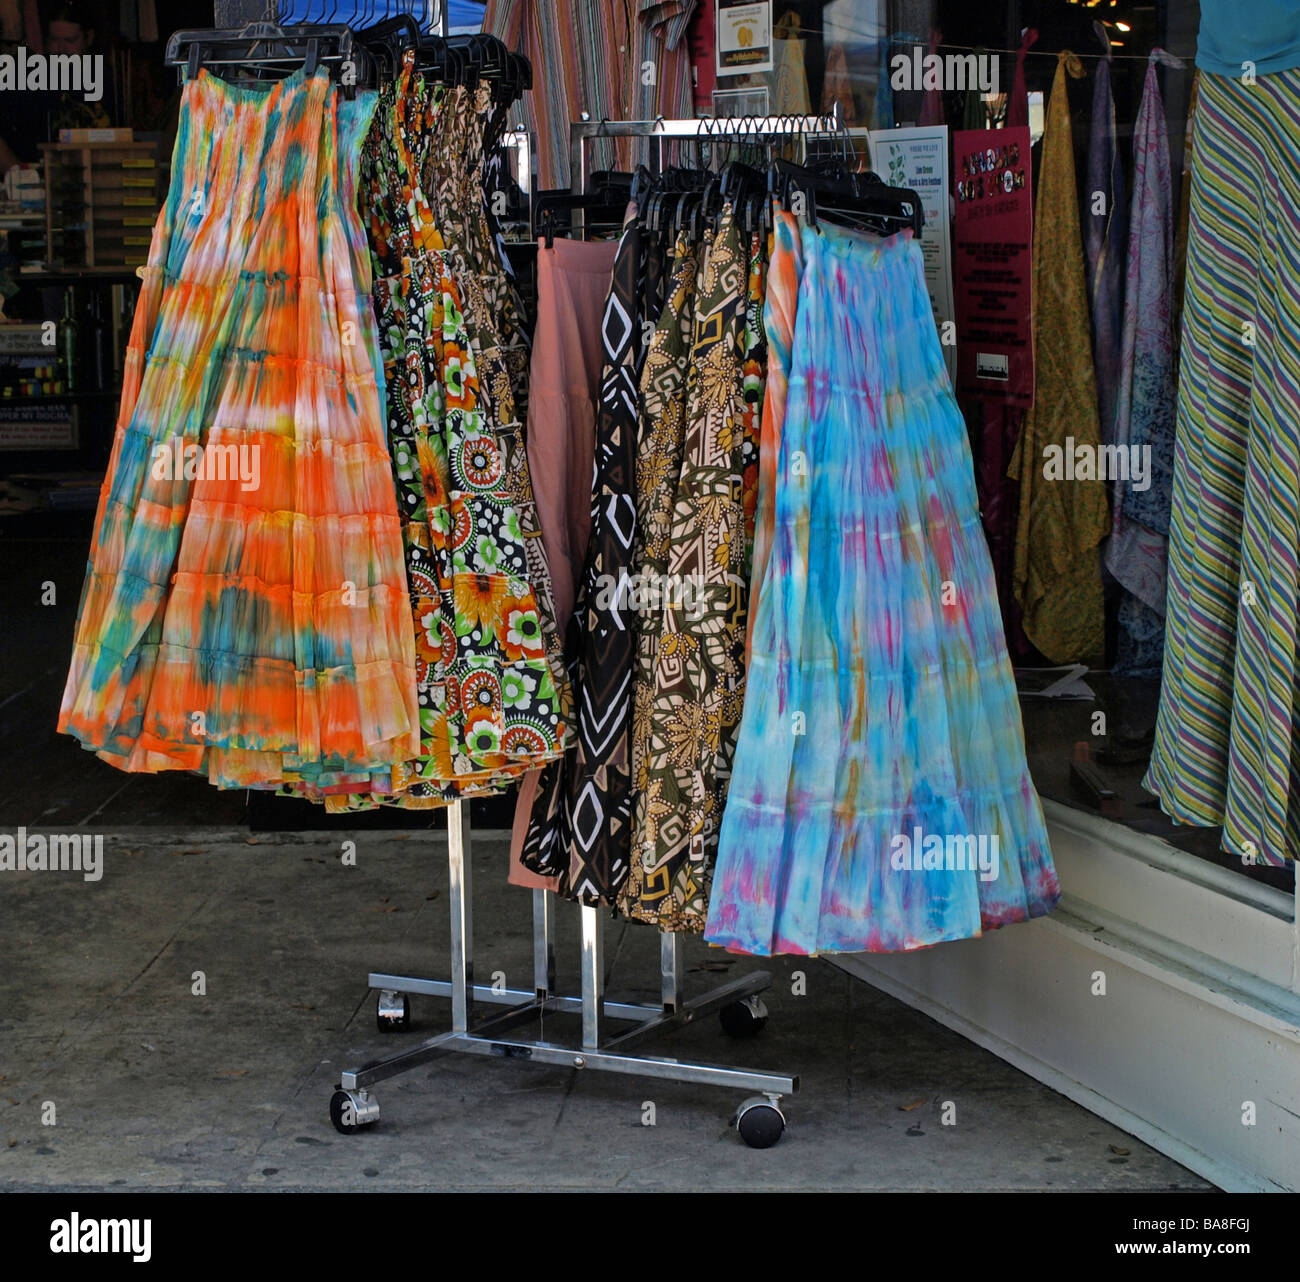 mehrfarbige Kleider auf einem Display Rack außerhalb ein Geschäft kommerzielle Einrichtung, Röcke Rock Stockfoto